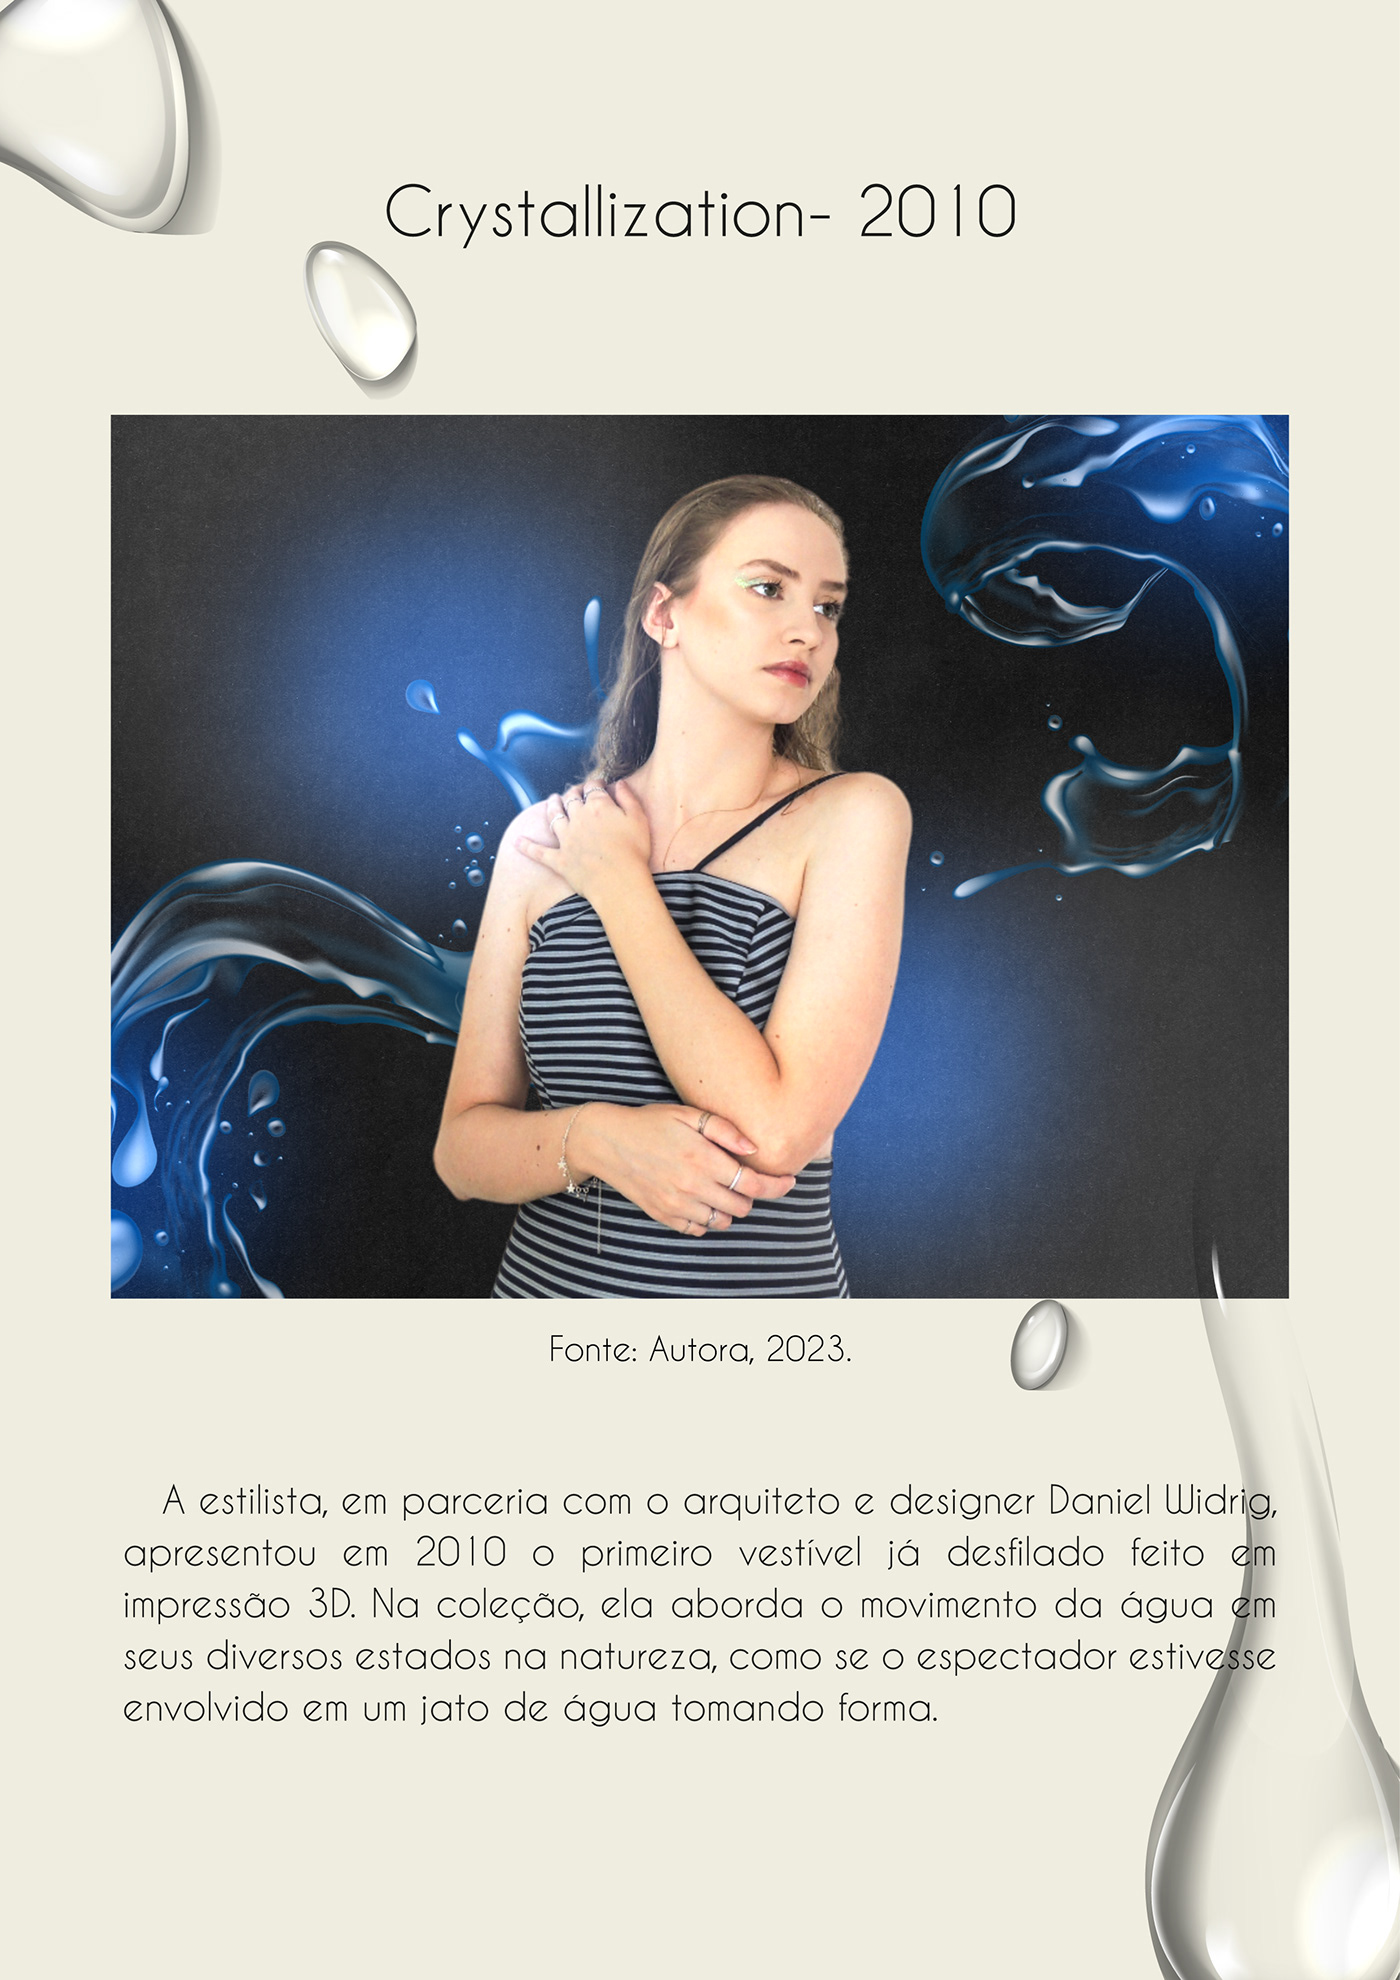 Irisvanherpen catalogo moda ALTACOSTURA design produção de moda edição de imagem modadeluxo